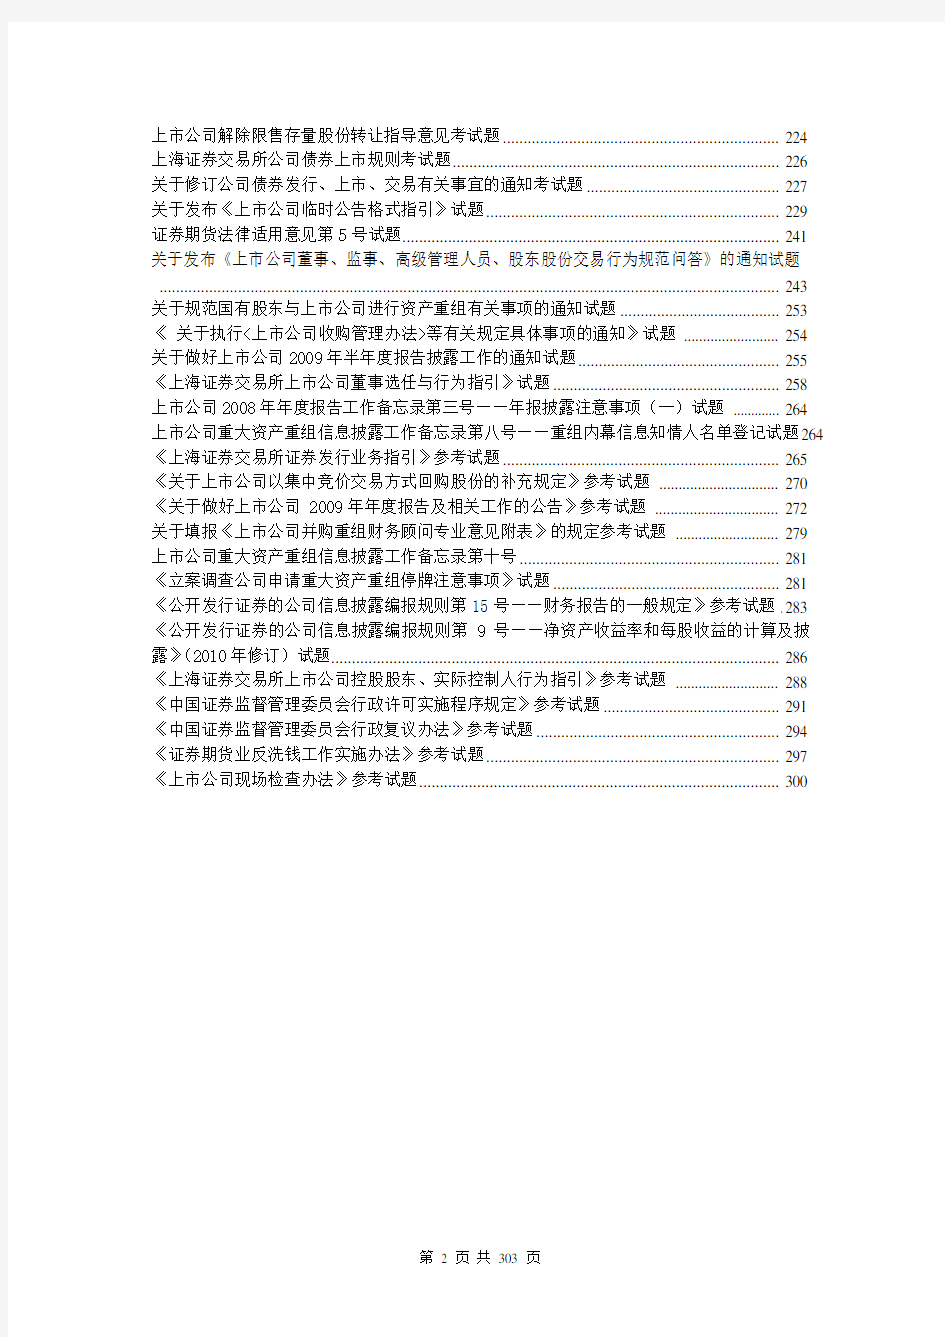 上海证券交易所董事会秘书资格考试题库和答案-完整版